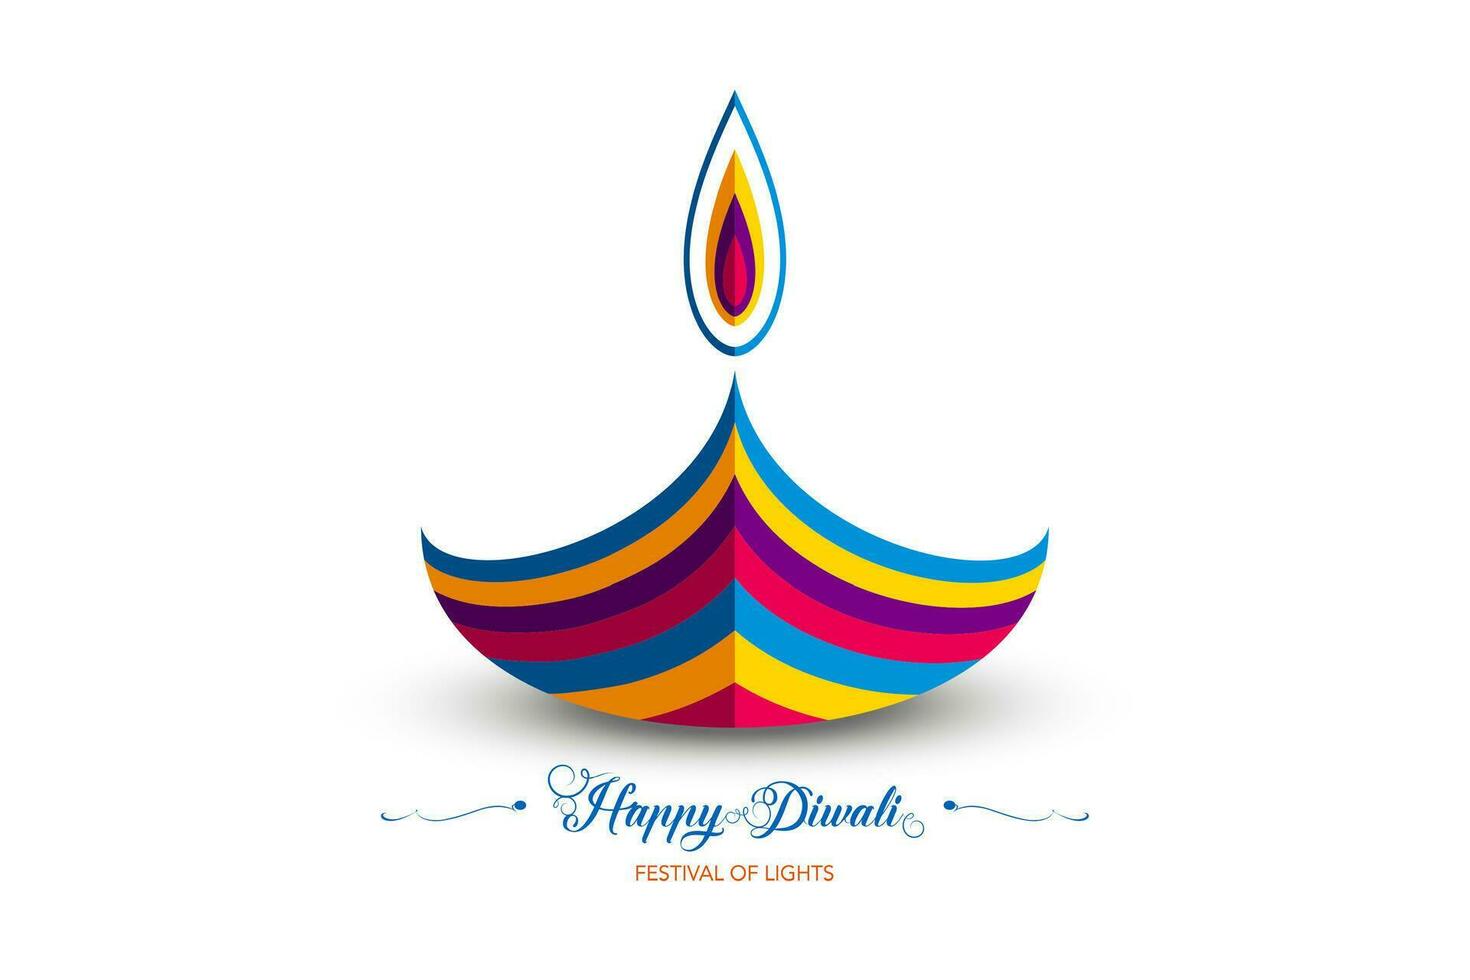 Lycklig diwali festival av lampor Indien firande färgrik logotyp mall. grafisk baner design av indisk diya olja lampa, papper skära design i vibrerande färger. vektor isolerat på vit bakgrund